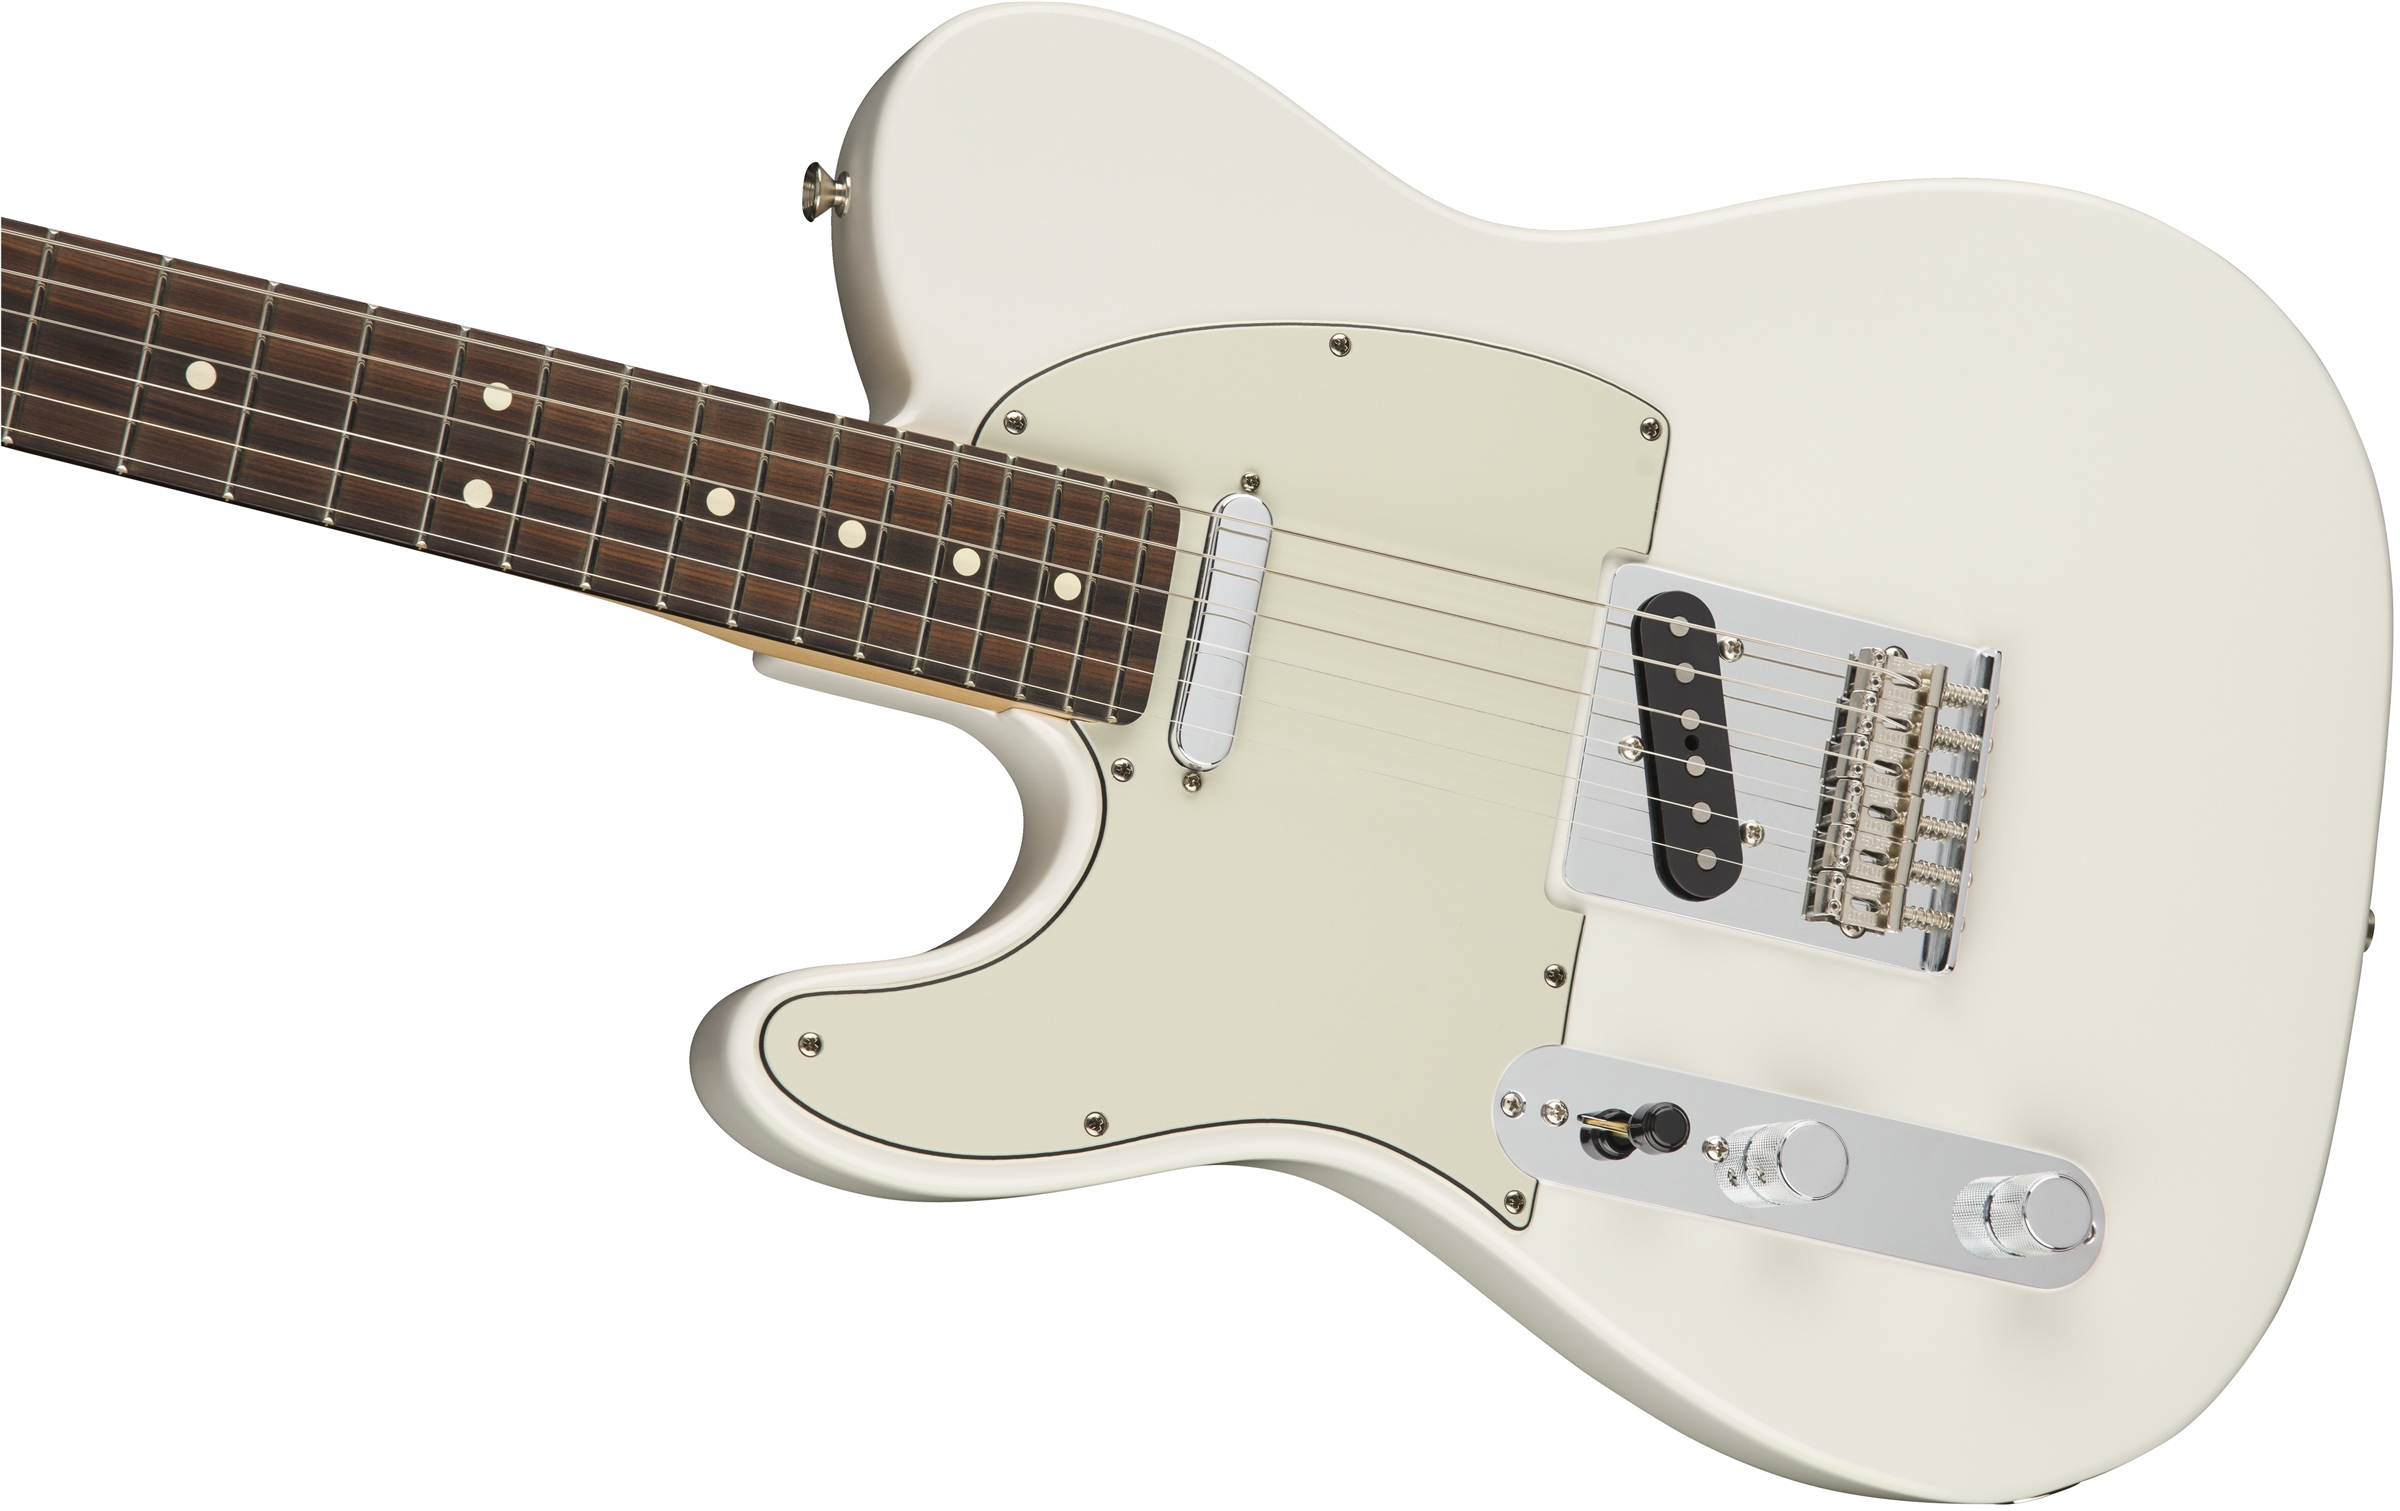 Fender Tele Player Lh Gaucher Mex Ss Pf - Polar White - Linkshandige elektrische gitaar - Variation 3